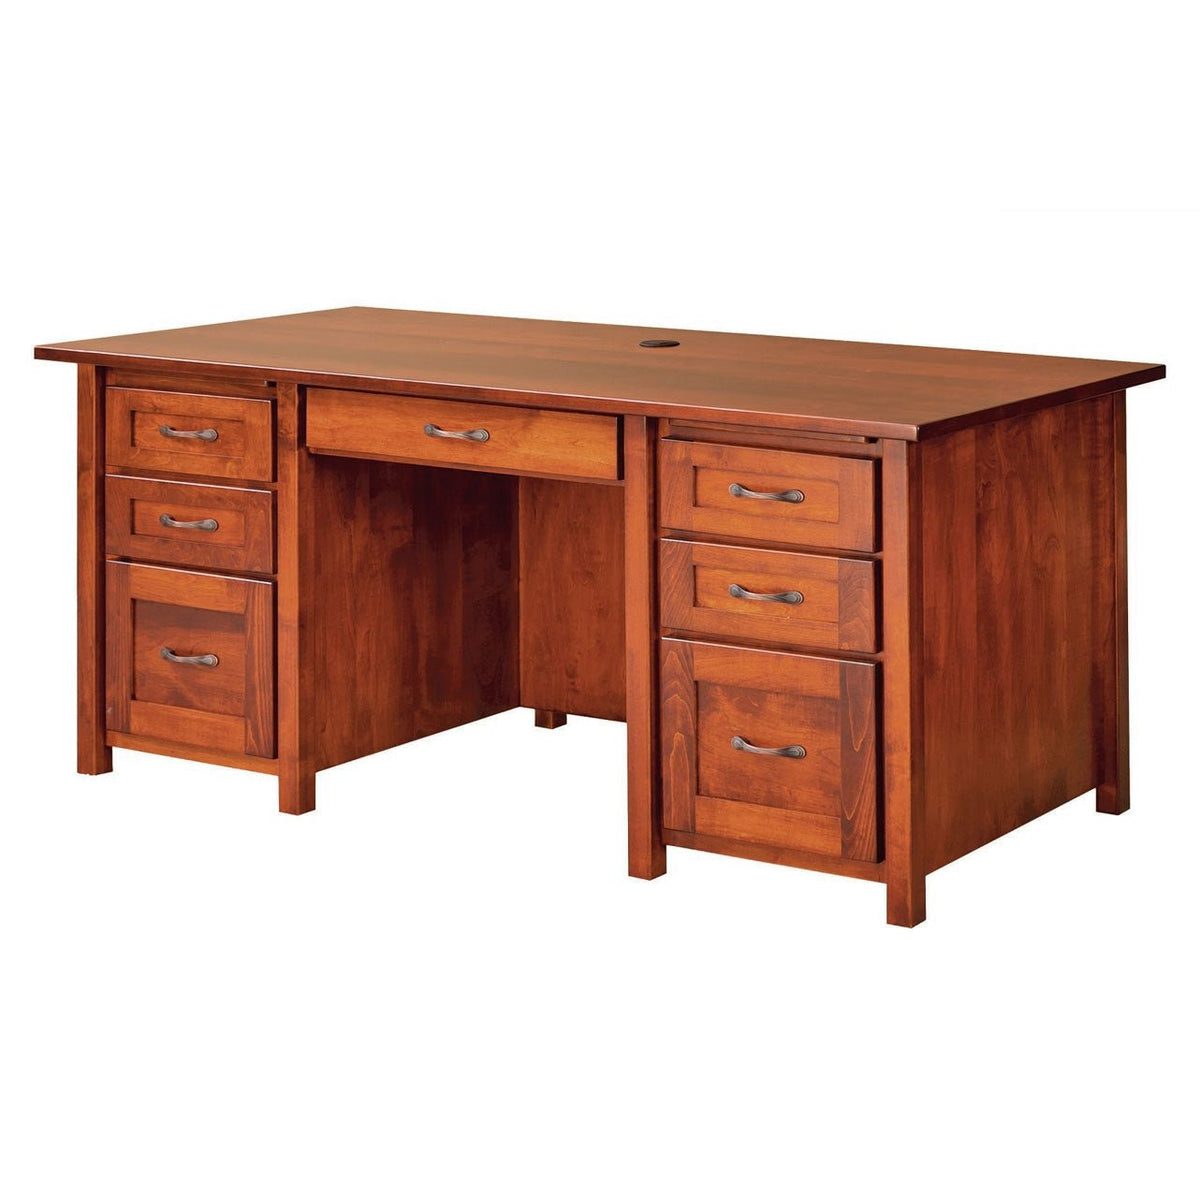 Shelton Executive Desk - snyders.furniture